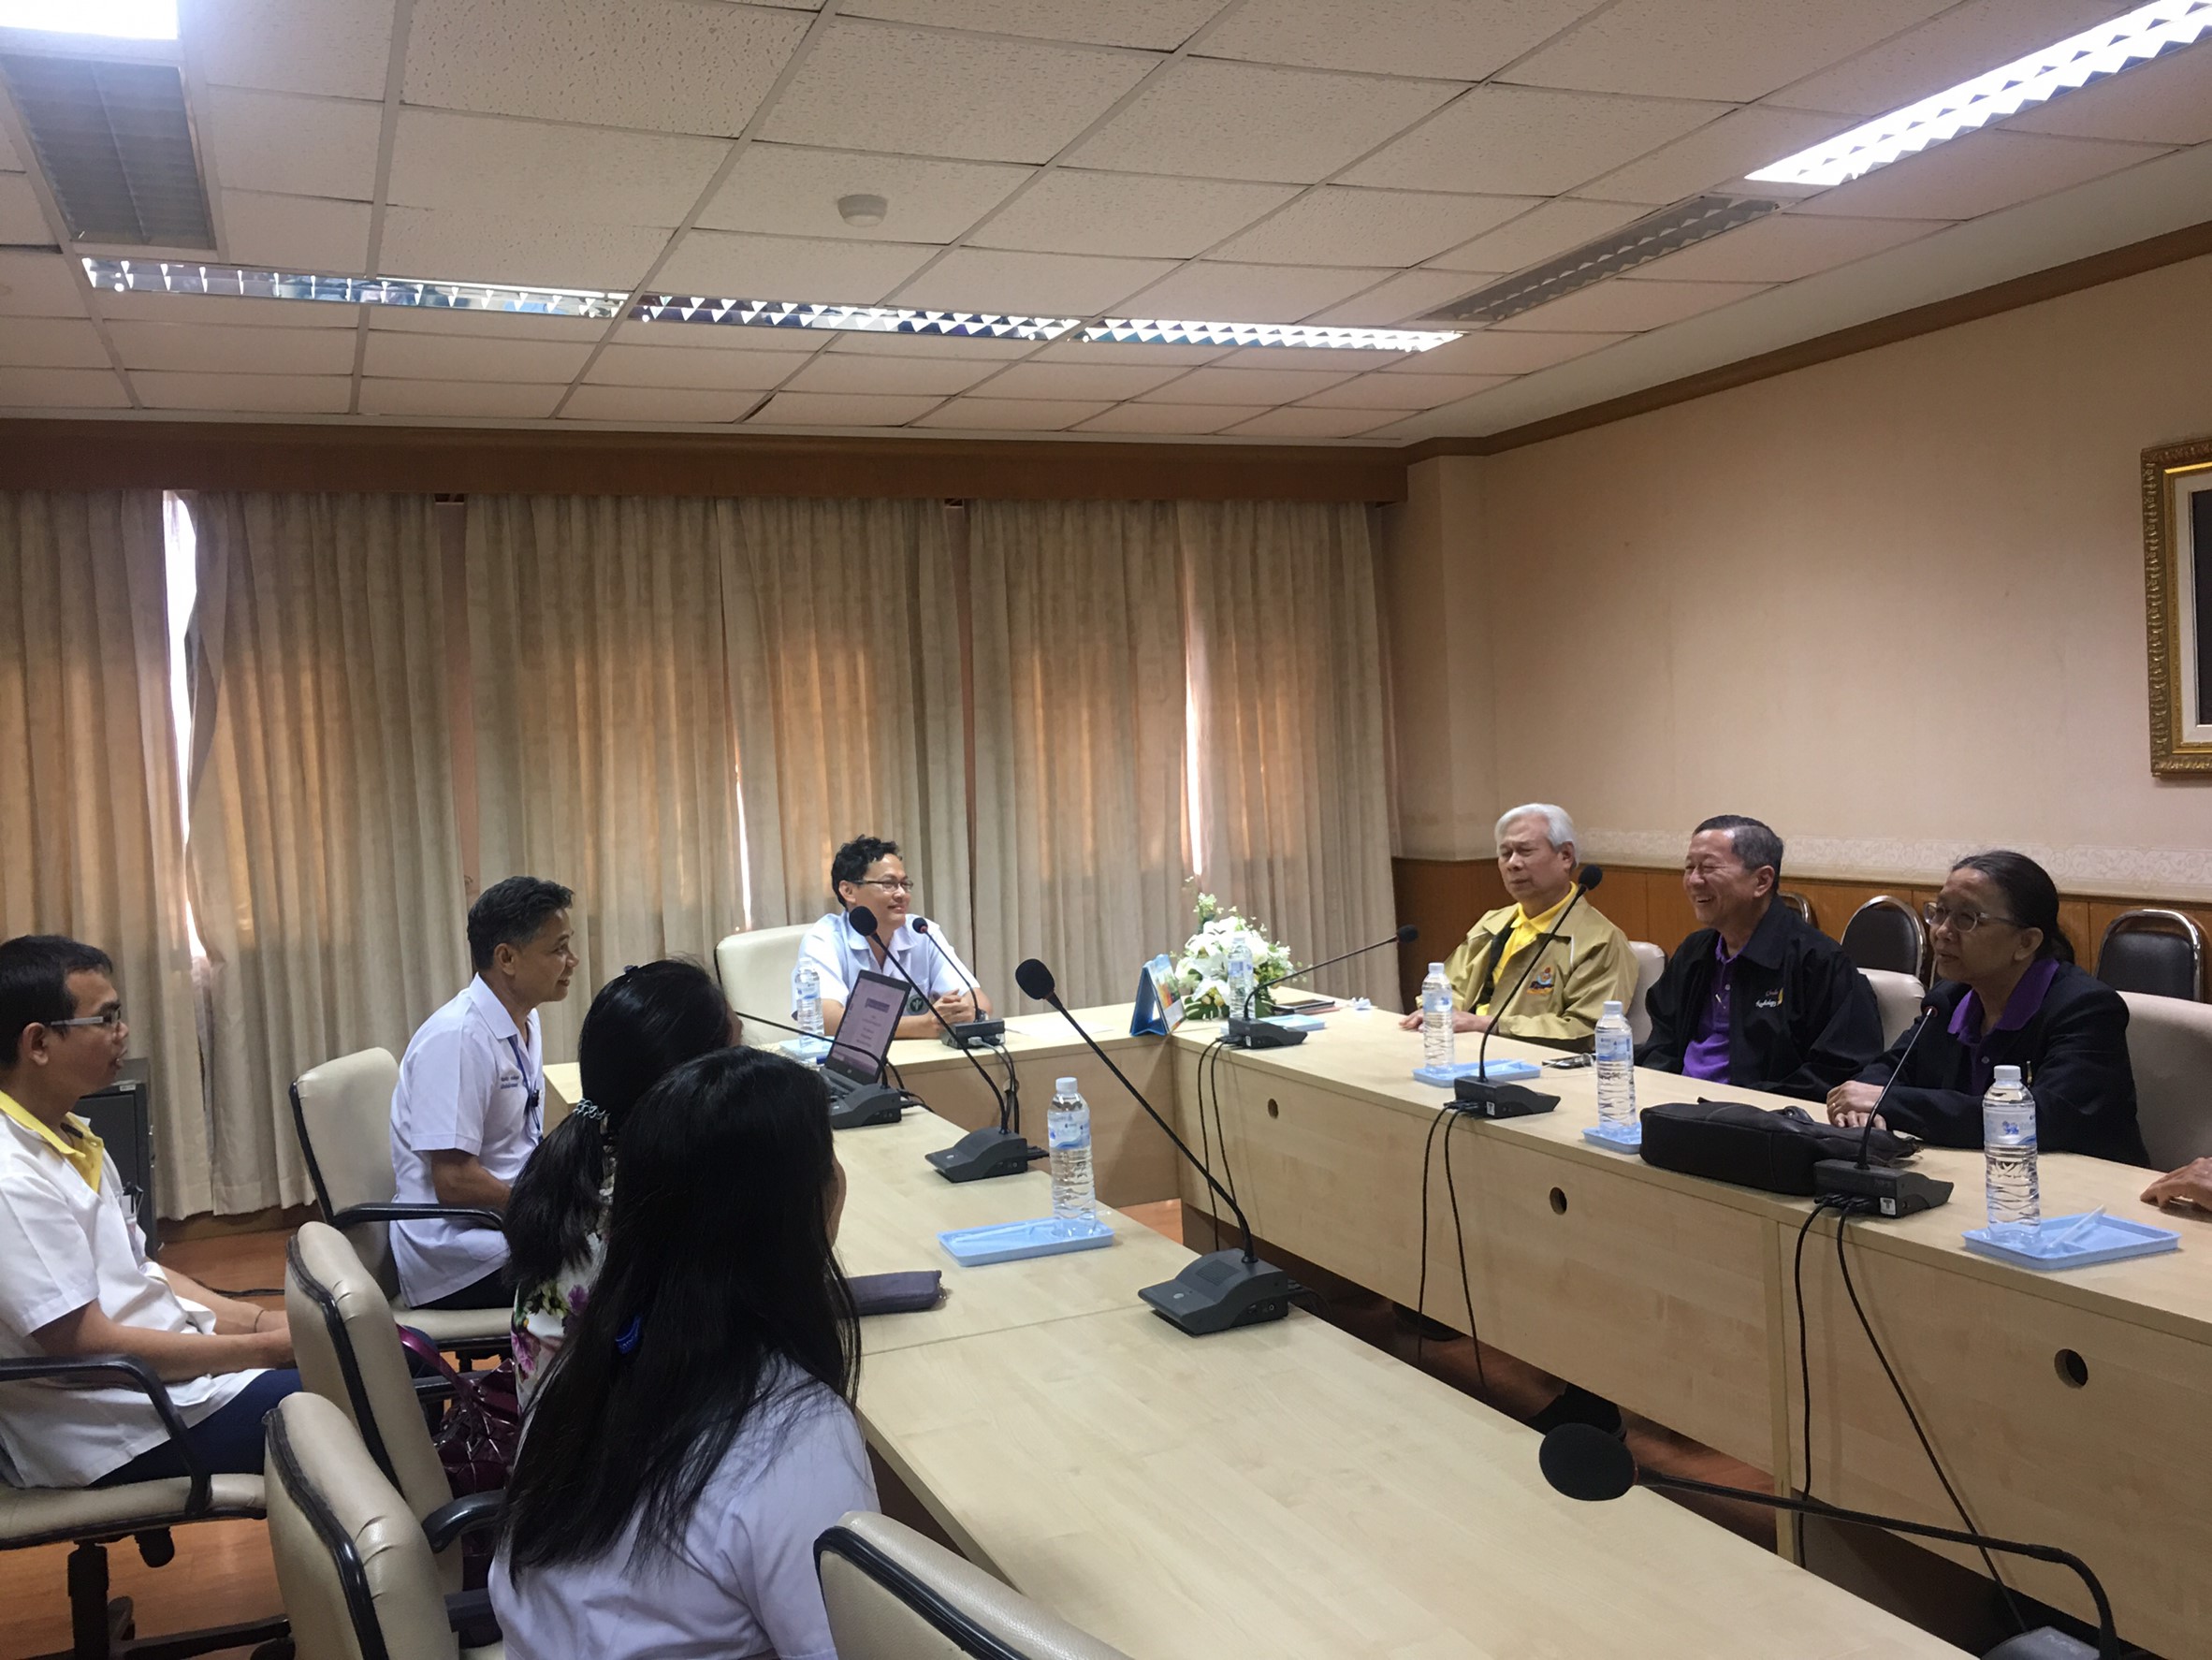 ประชุมวิชาการร่วมกับรังสีการแพทย์แห่งประเทศไทย ครั้งที่17 27-29 พ.ย. - พร้อมเข้าเยี่ยมและให้กำลังใจหน่วยงานรังสีวิทยาในพื้นที่จังหวัดอุบลราชธานีระหว่างวันที่ 25-26 พฤศจิกายน 2562 38